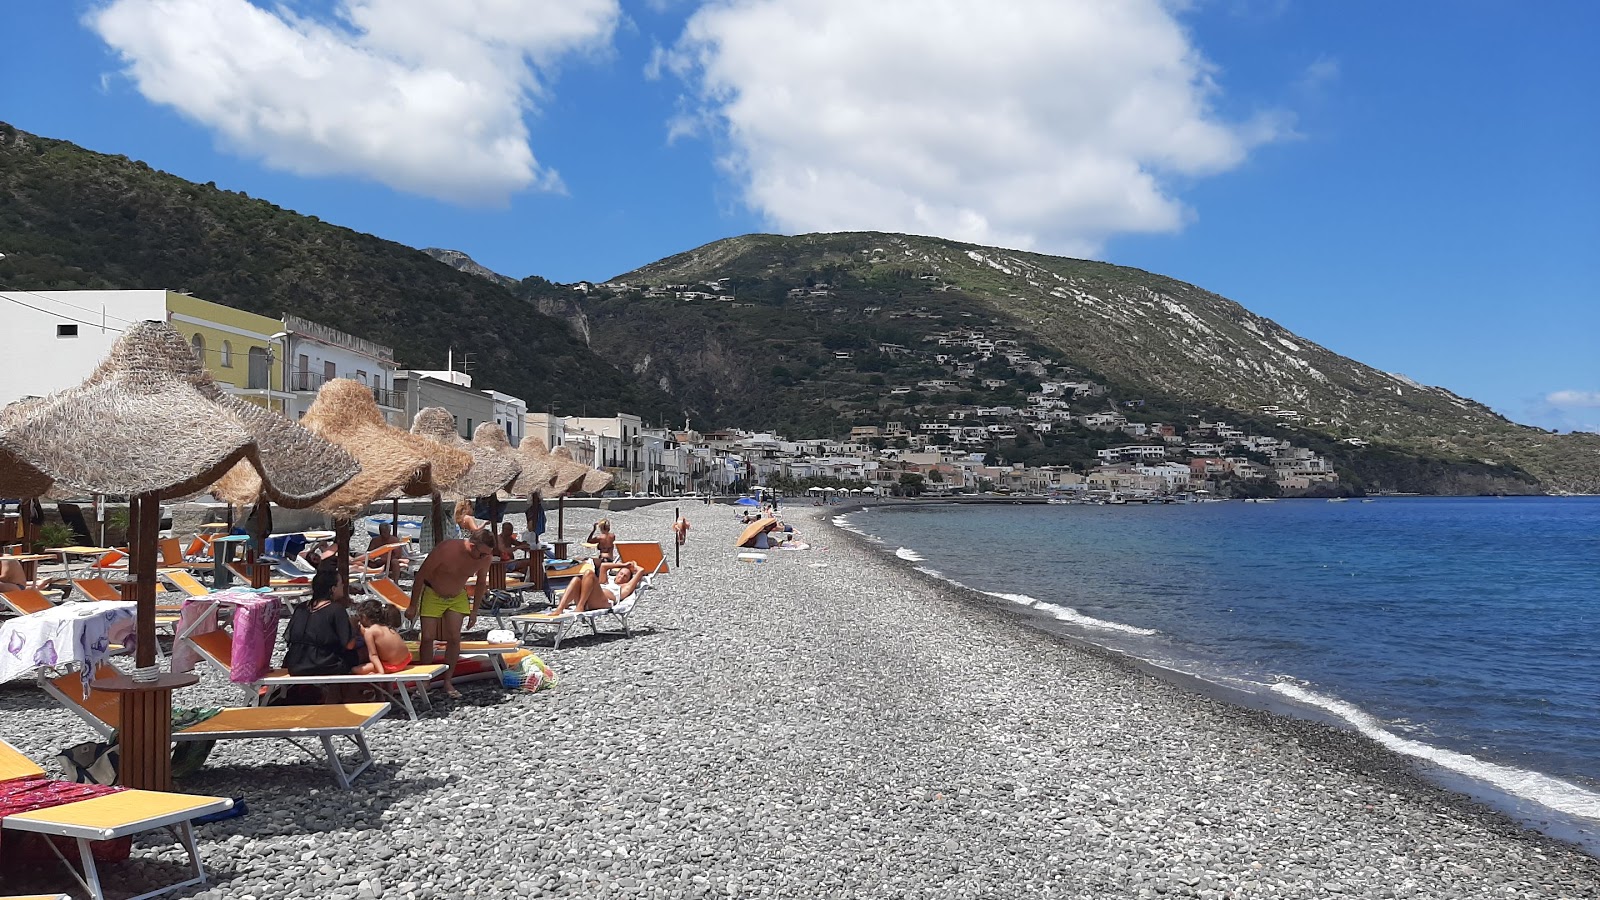 Zdjęcie Canneto beach z poziomem czystości głoska bezdźwięczna